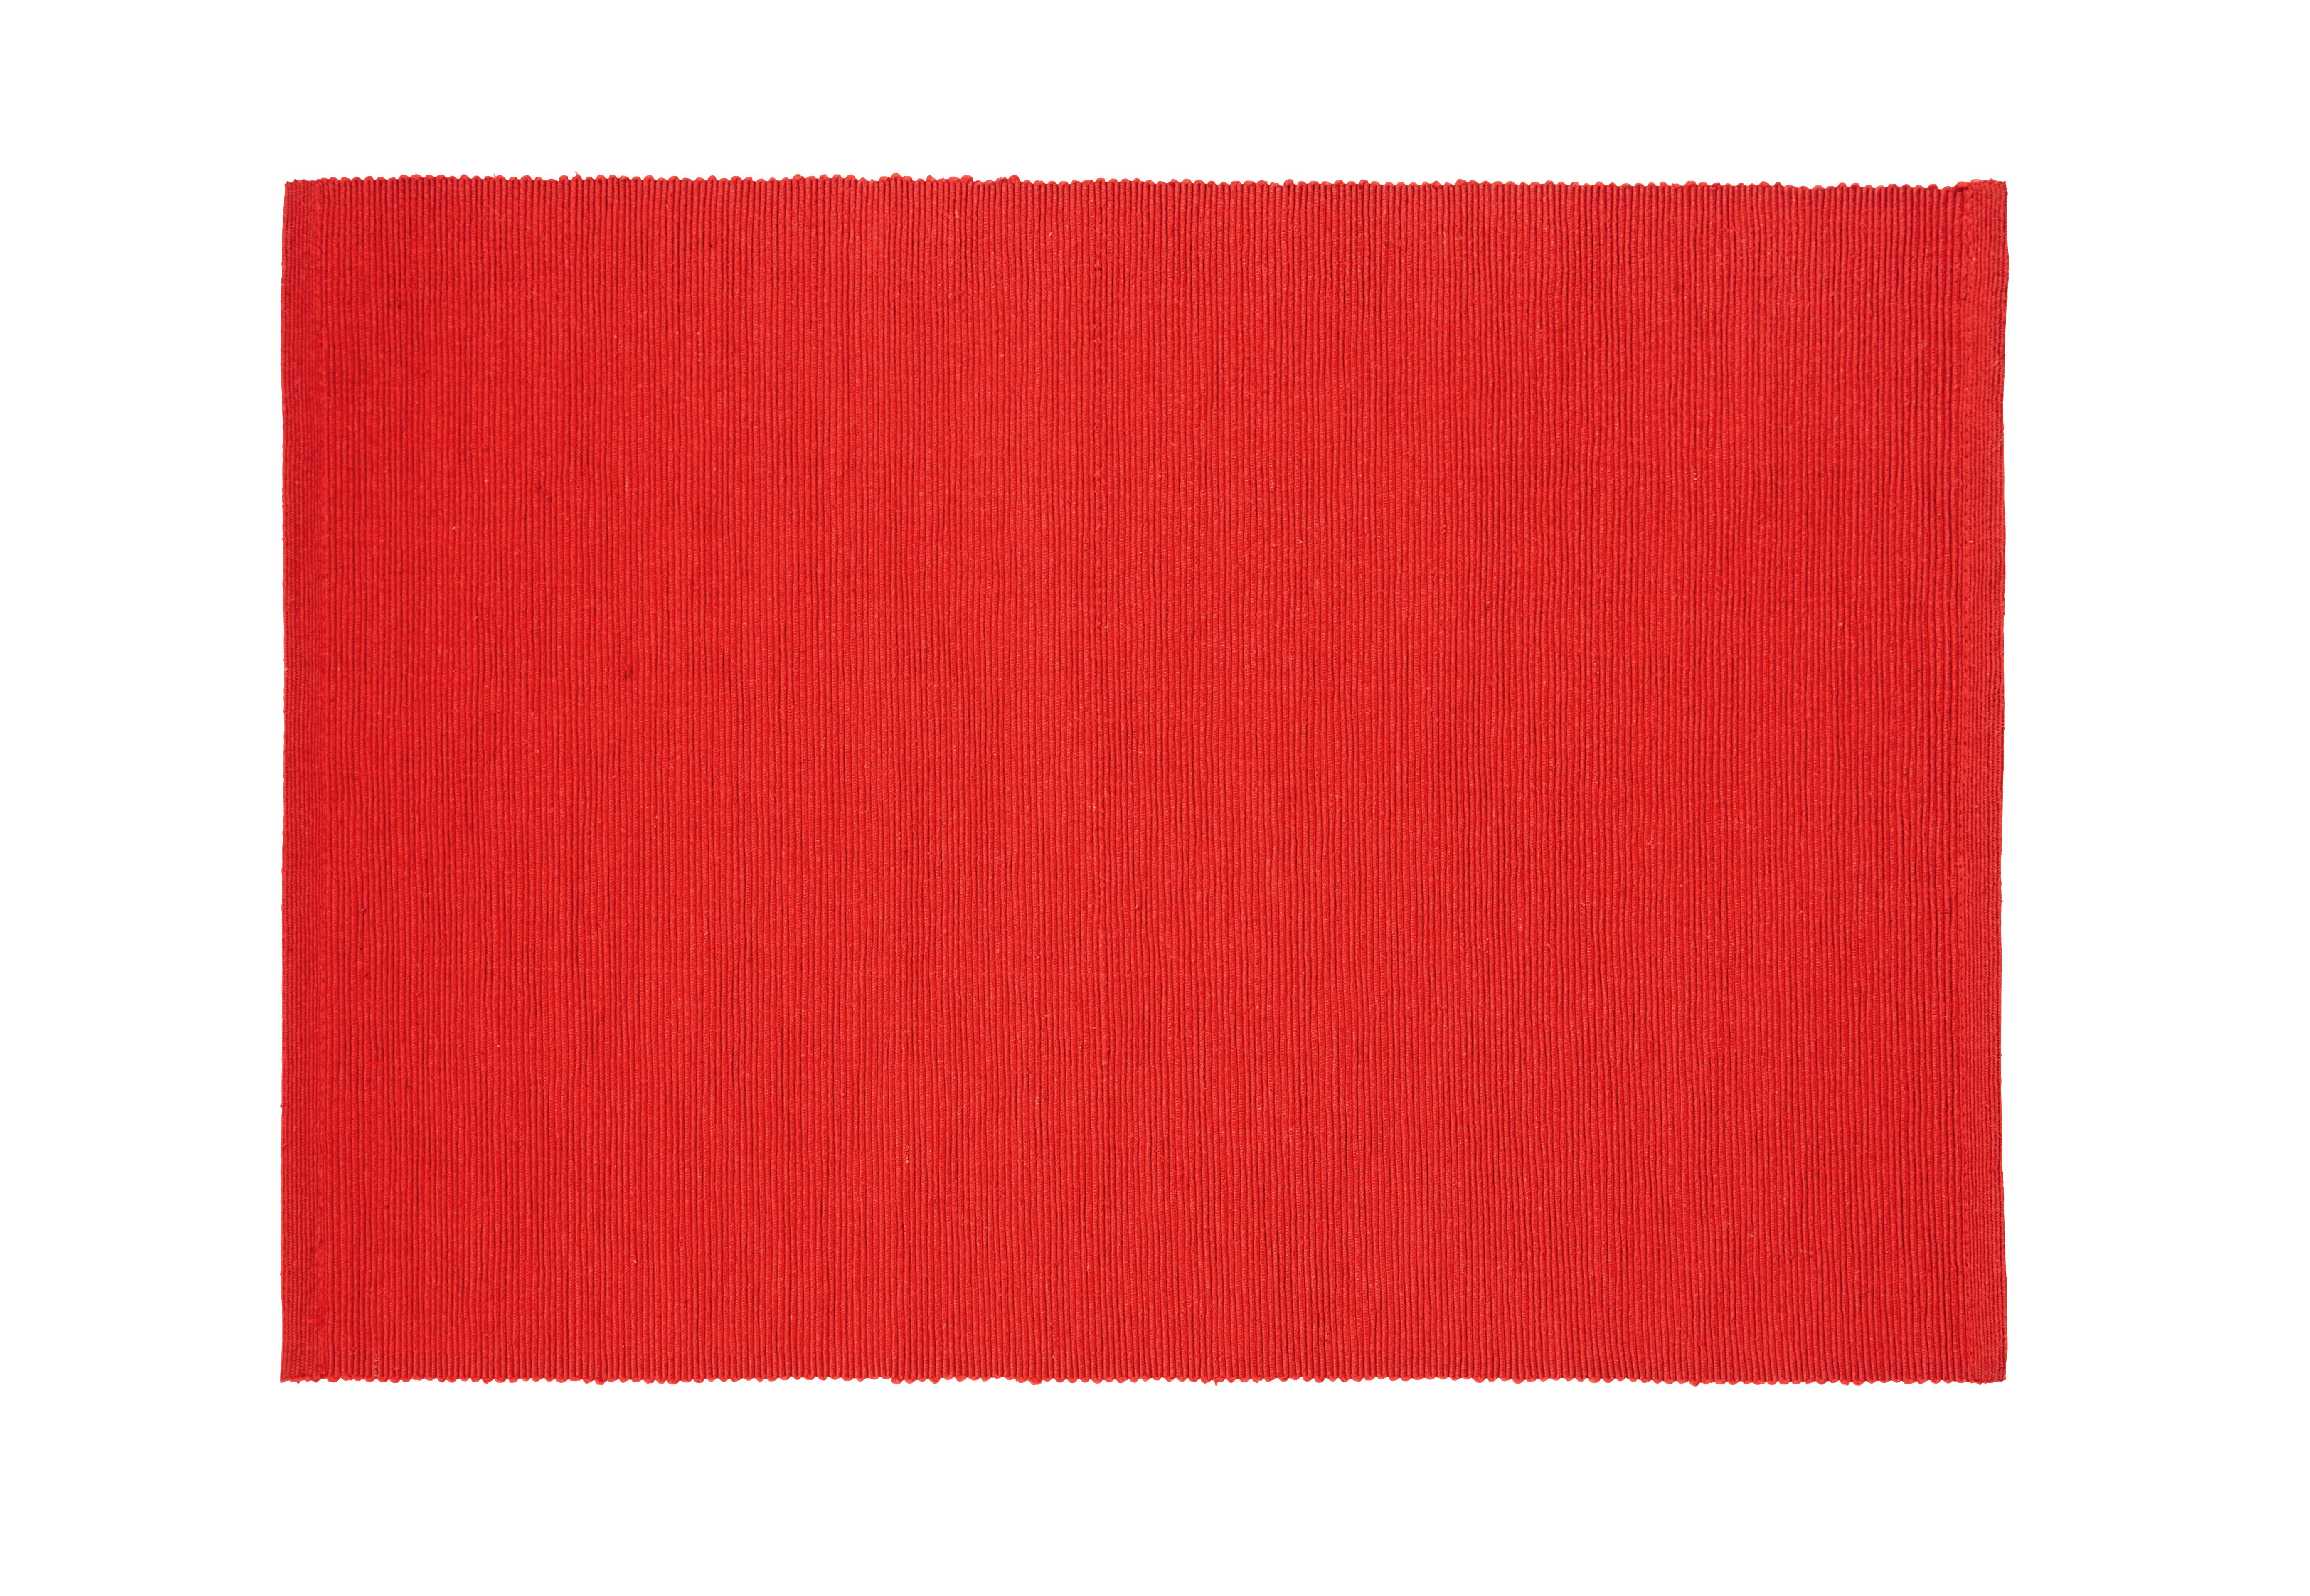 Prostírání Maren, 33/45cm, Červená - červená, textil (33/45cm) - Based